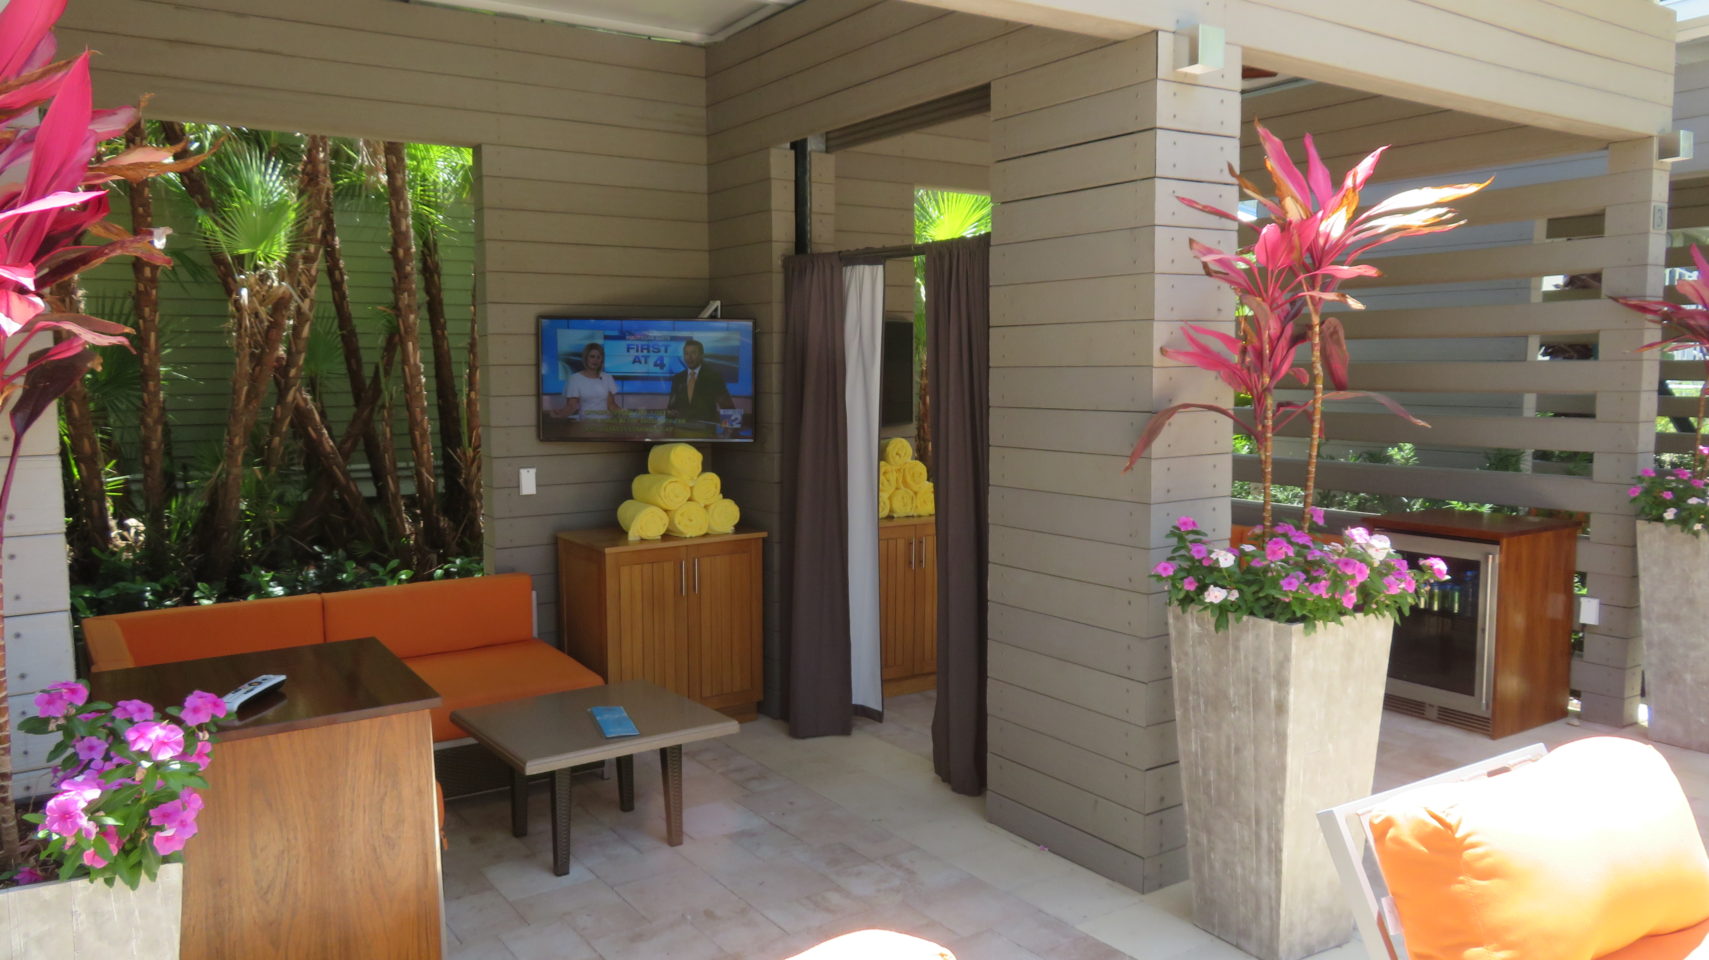 Pool-side cabana at the Hyatt Regency Coconut Point ~ Gem of a Florida Resort